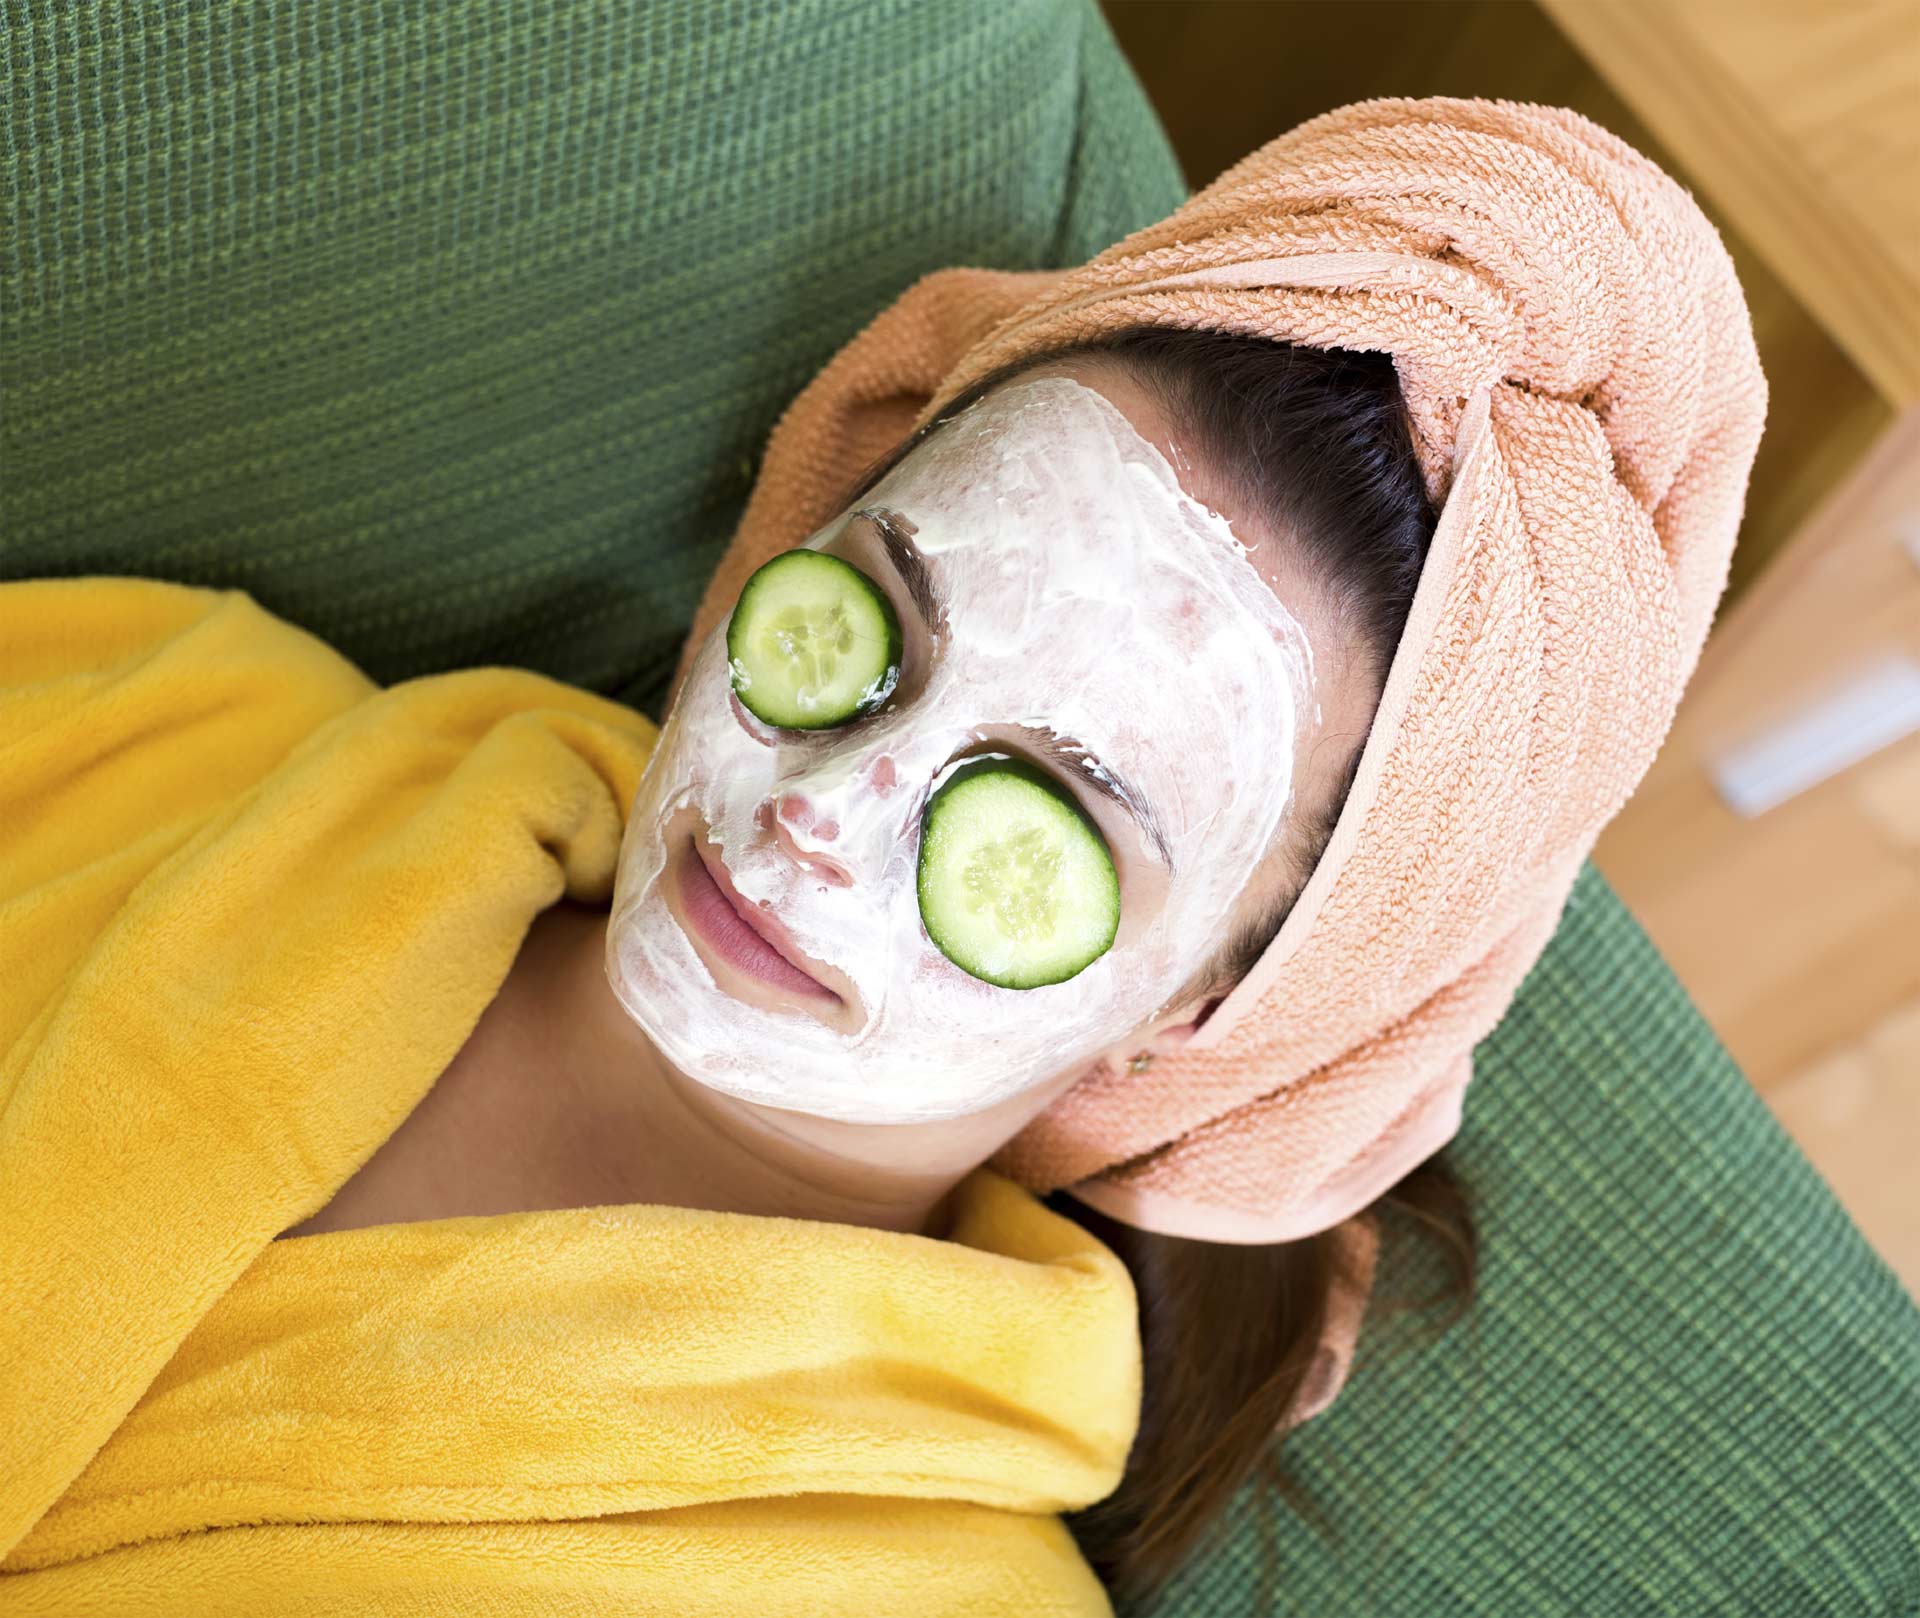 Para cuidar tu rostro, debes usar productos de acorde a tu edad y a tu tipo de piel. Descubre aquí cuál son los ideales para ti